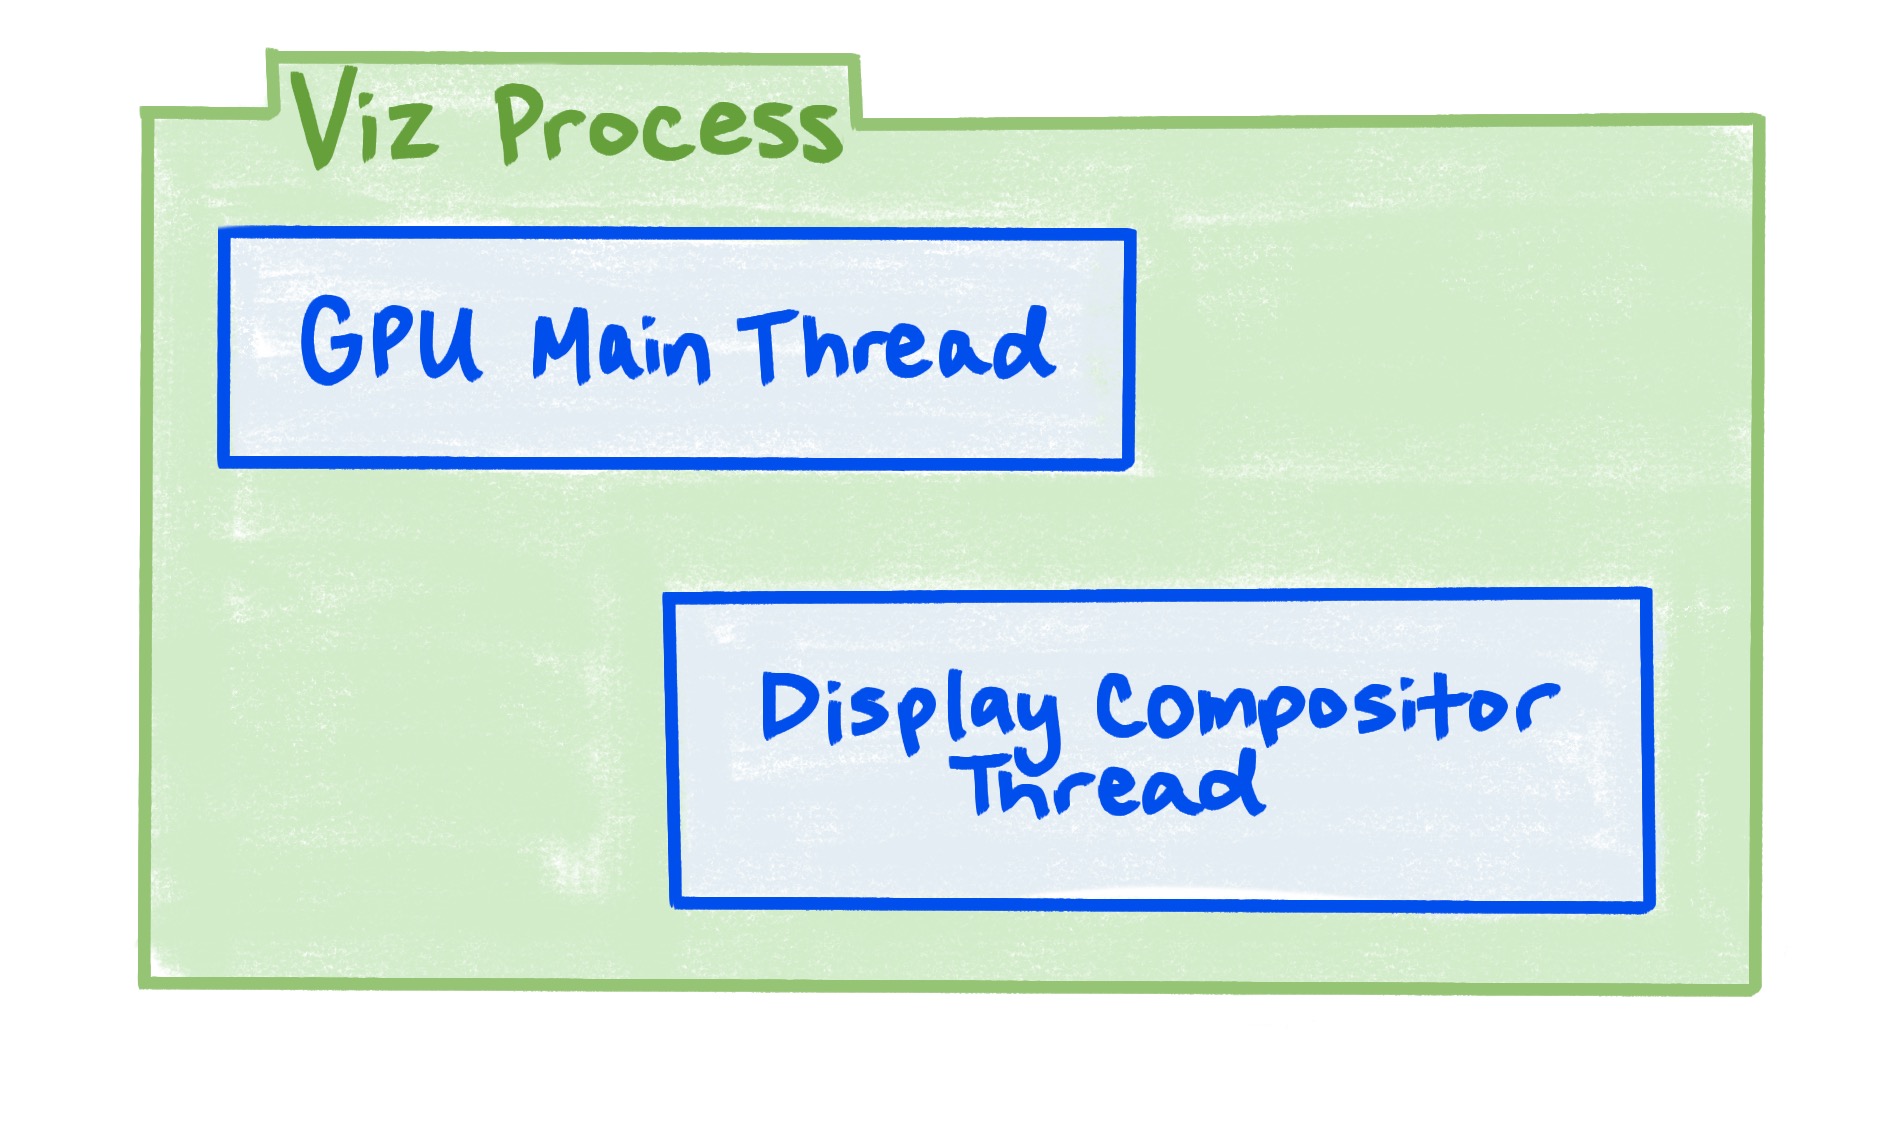 Viz プロセスに GPU メインスレッドとディスプレイ コンポジタ スレッドが含まれることを示す図。